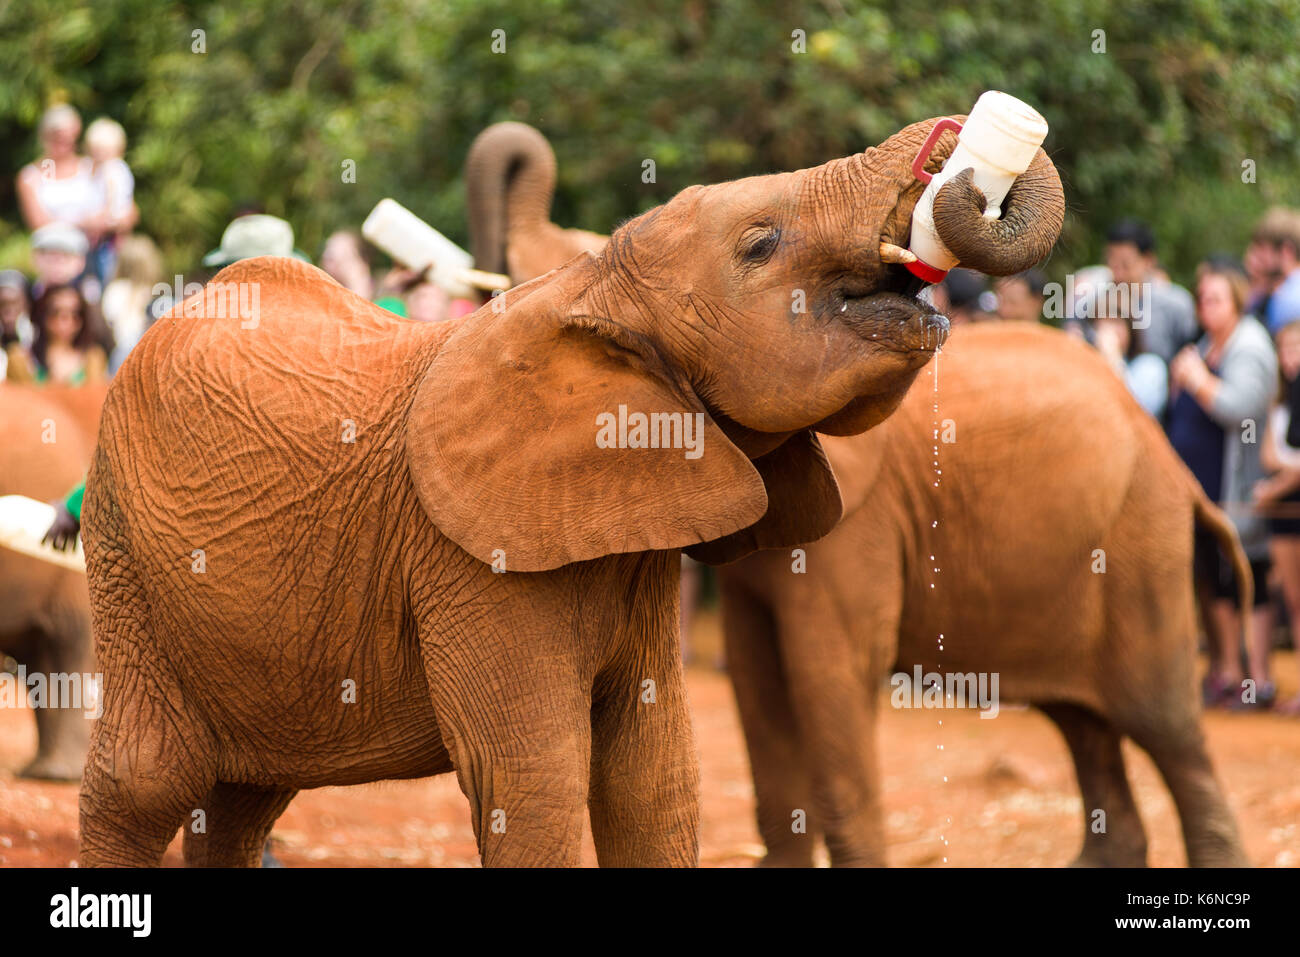 Kinder baby Afrikanischen Busch Elefant (Loxodonta africana) während der Fütterung an David Sheldrick das Elefanten Waisenhaus, Nairobi, Kenia Stockfoto